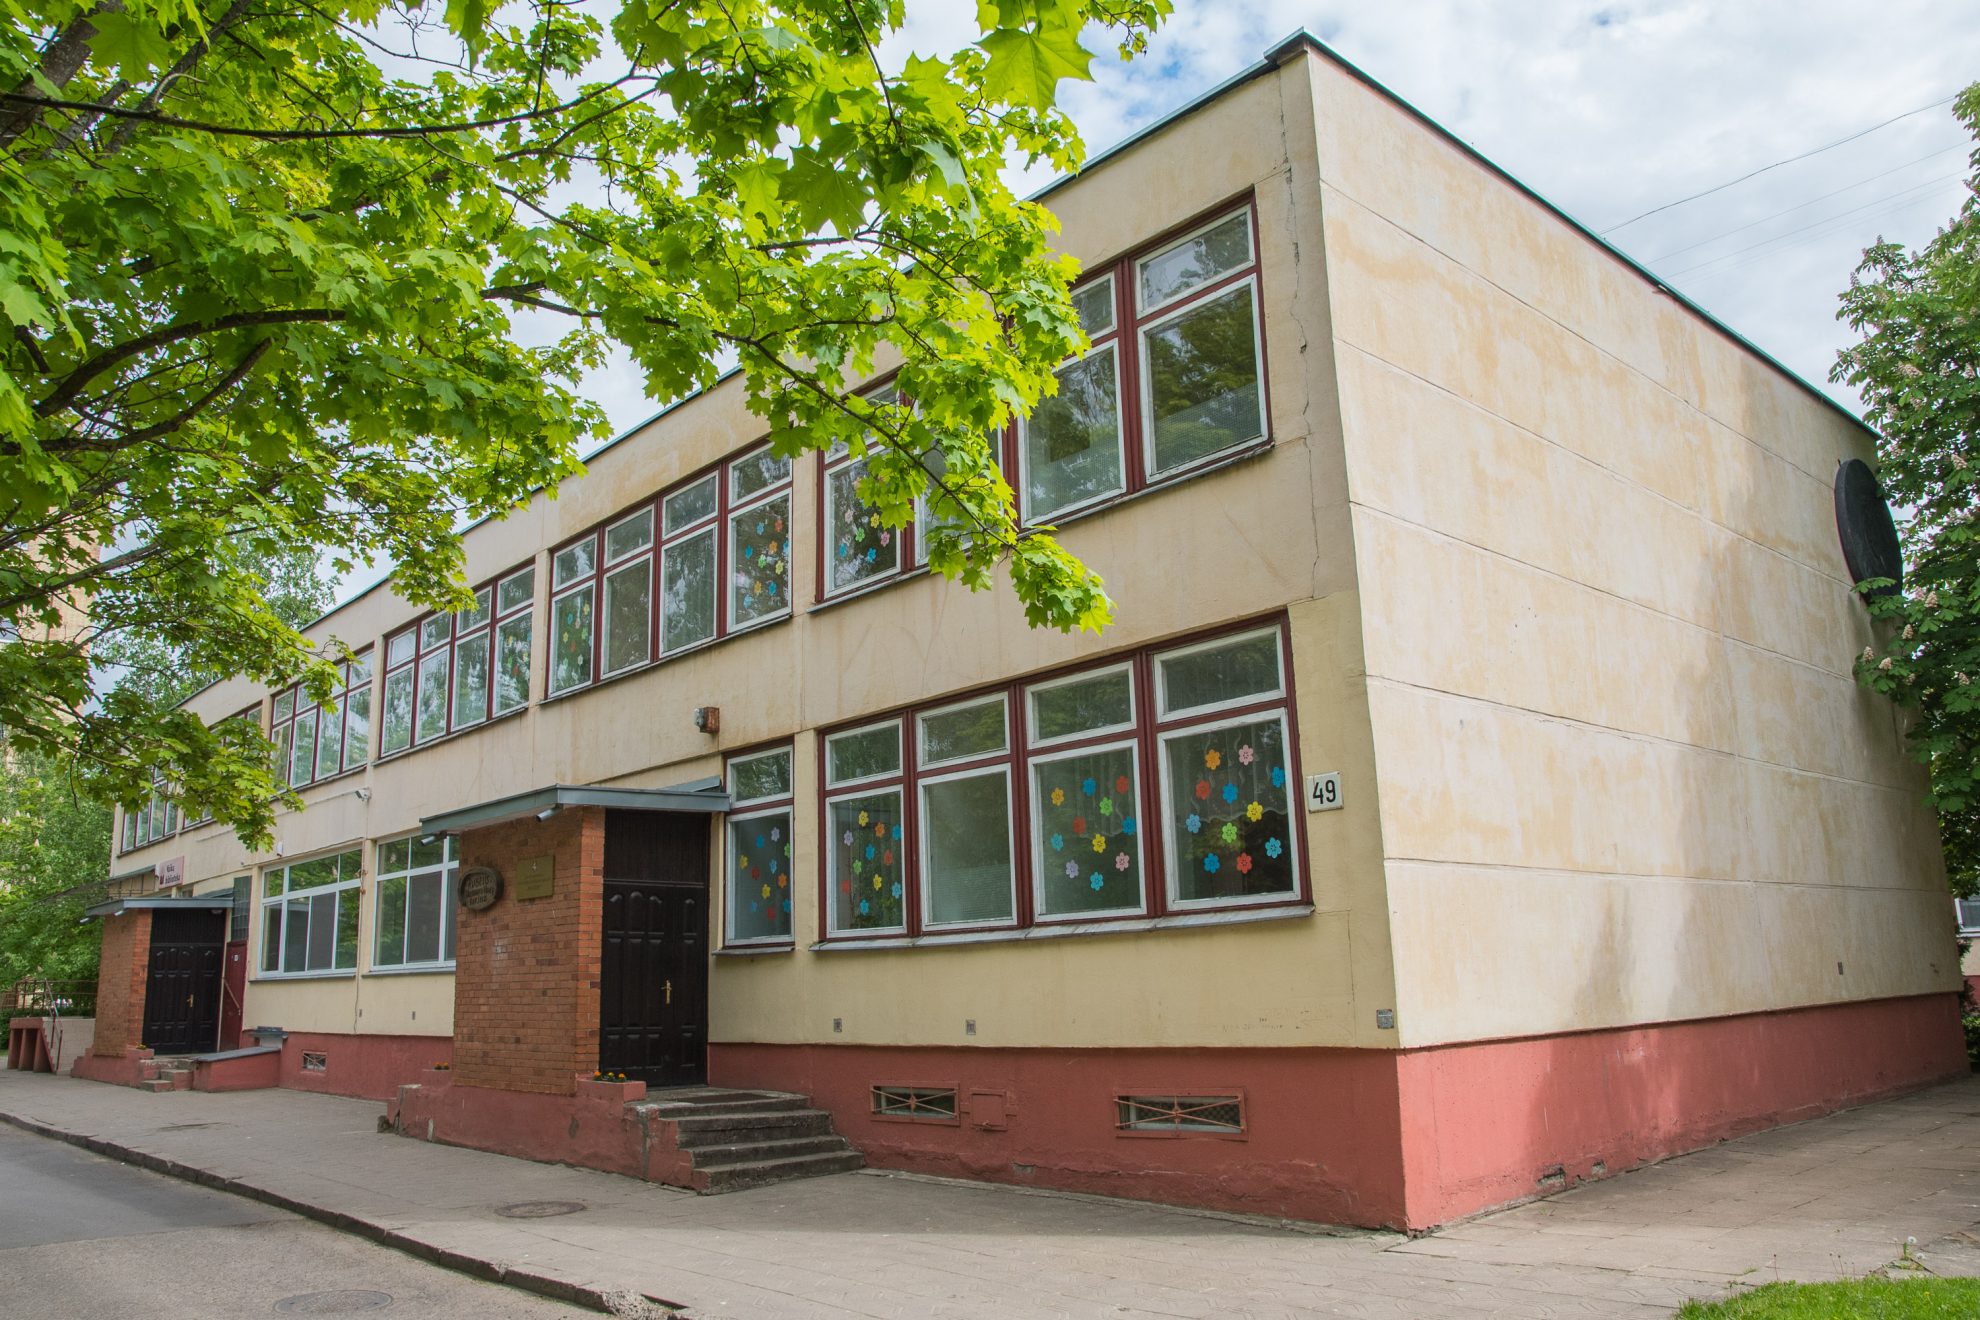 Panevėžio savivaldybė pranešė šešiuose miesto vaikų darželiuose dar šiais metais pakeisianti langus ir duris. Tačiau patenkini ne visi.